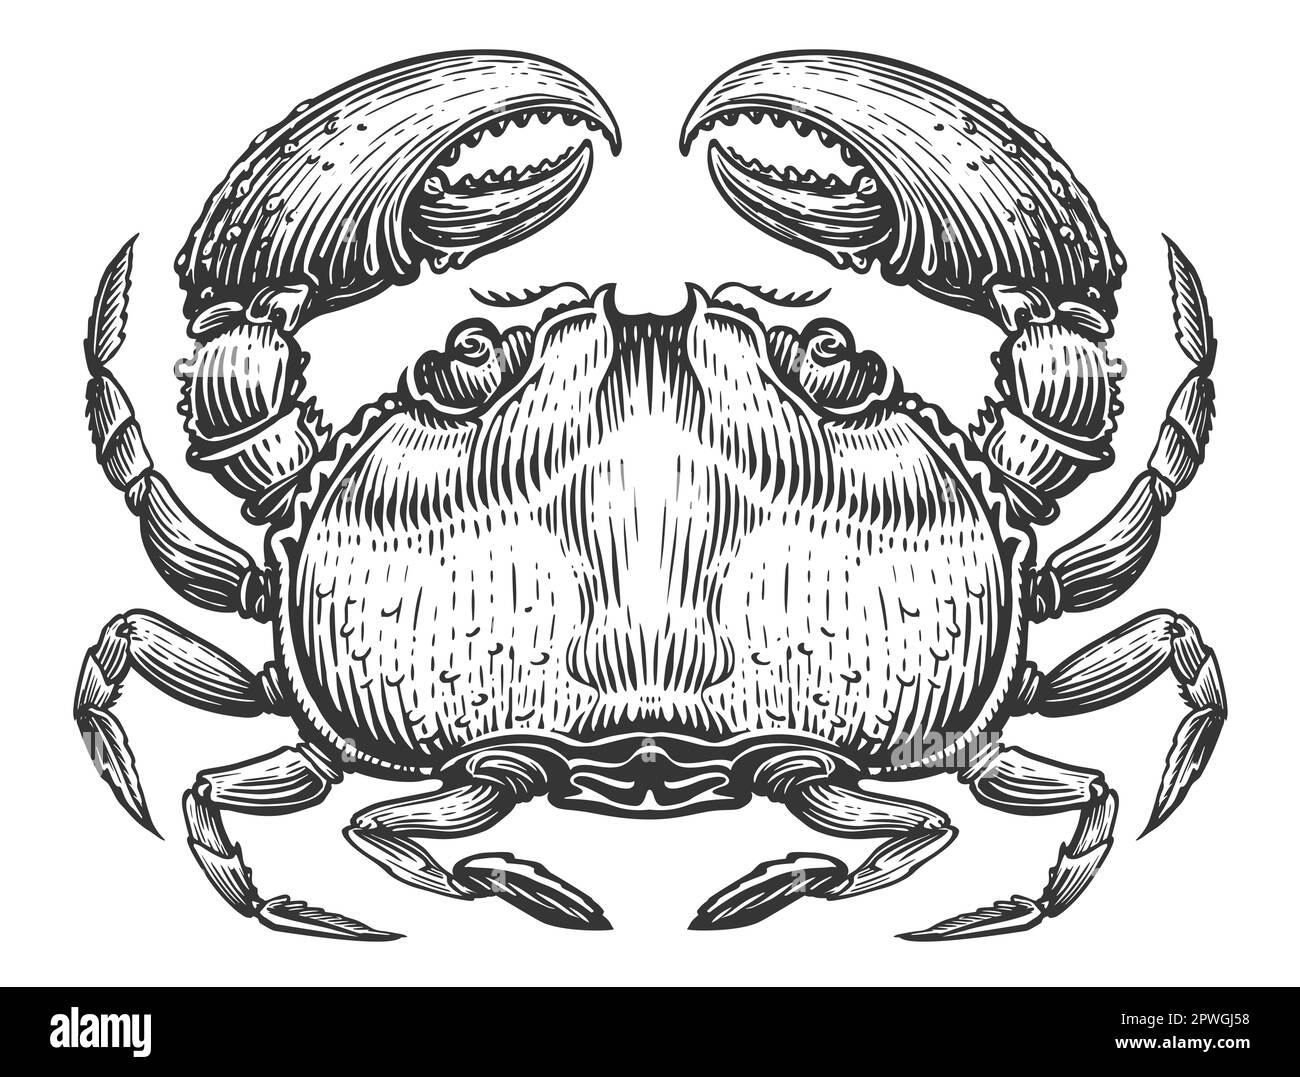 Ganze große Krabbe mit Krallen. Krustentiere im Stile der Vintage-Gravur. Meeresfrüchte-Skizze Stockfoto